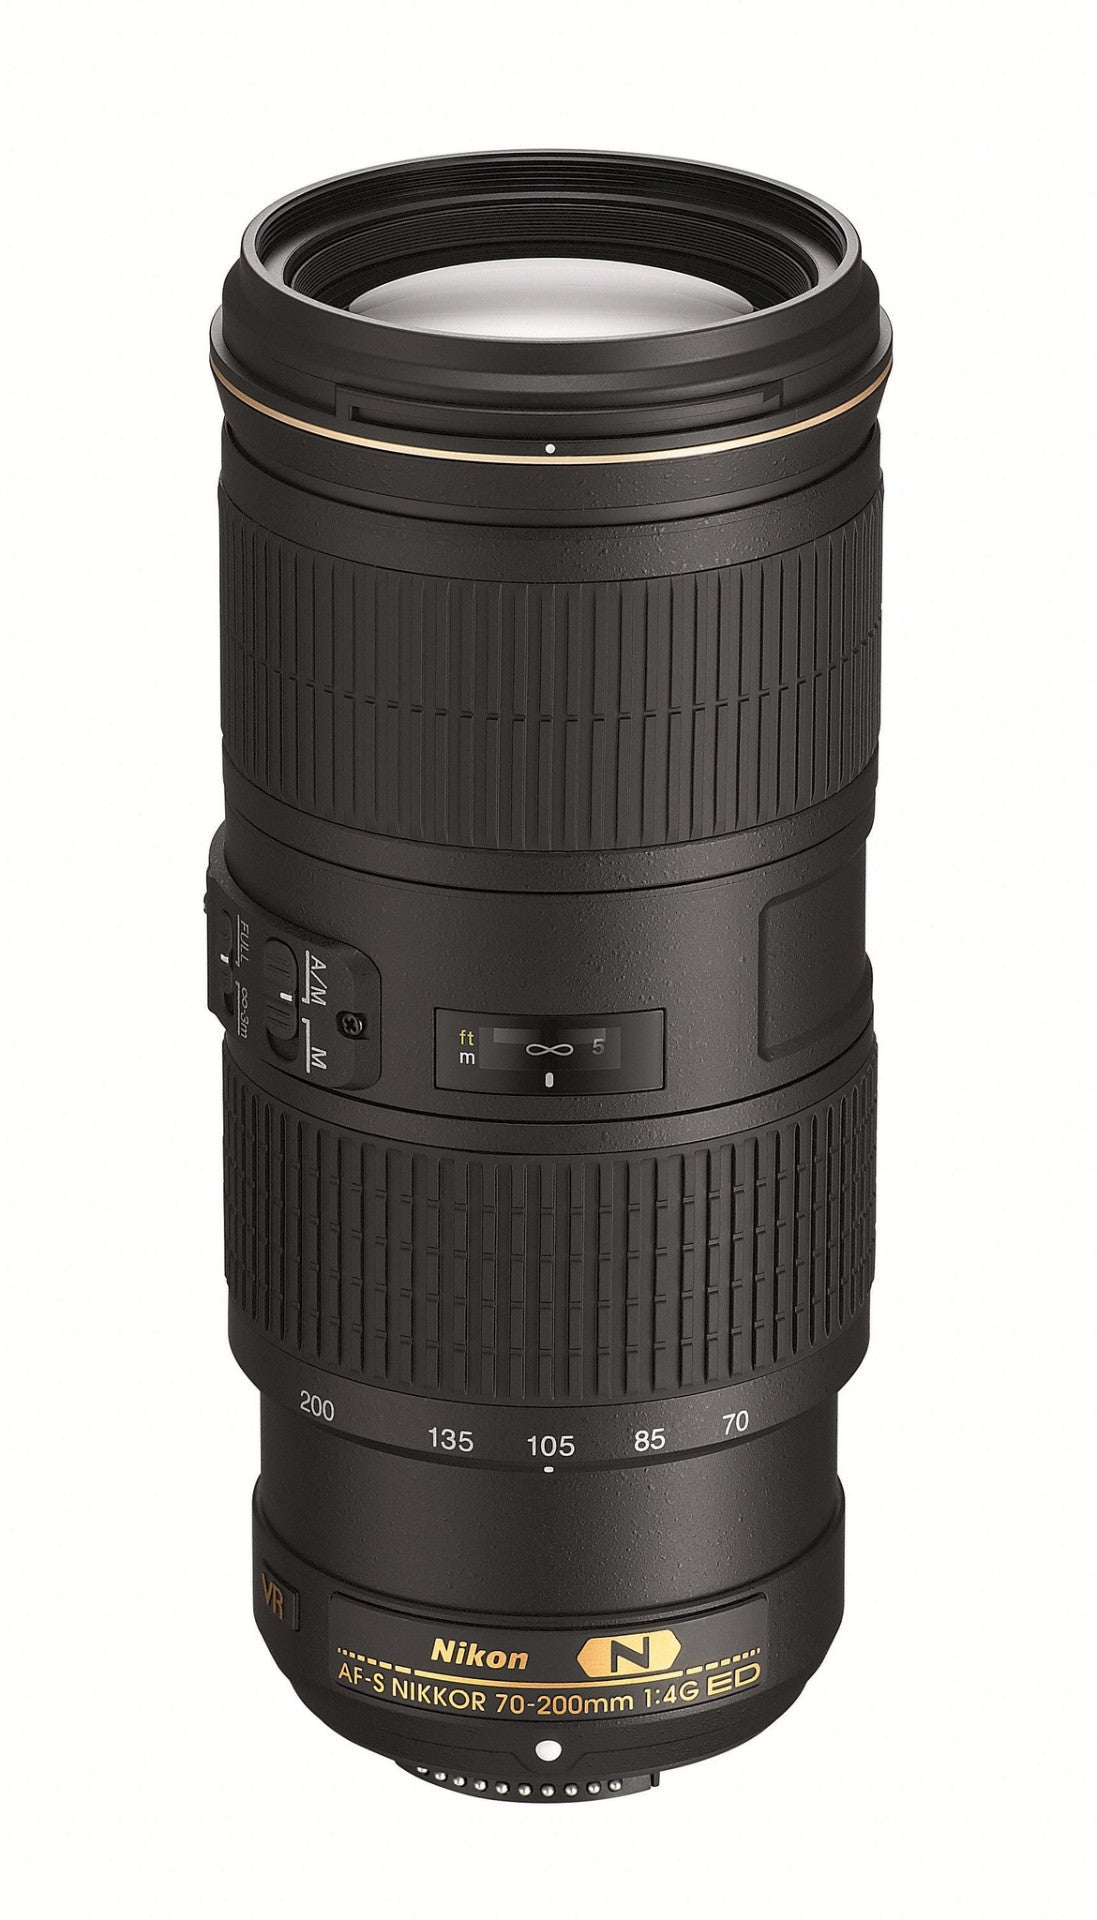 Nikon 70-200mm AF-S NIKKOR f/4G ED VR Lens, lenses slr lenses, Nikon - Pictureline 